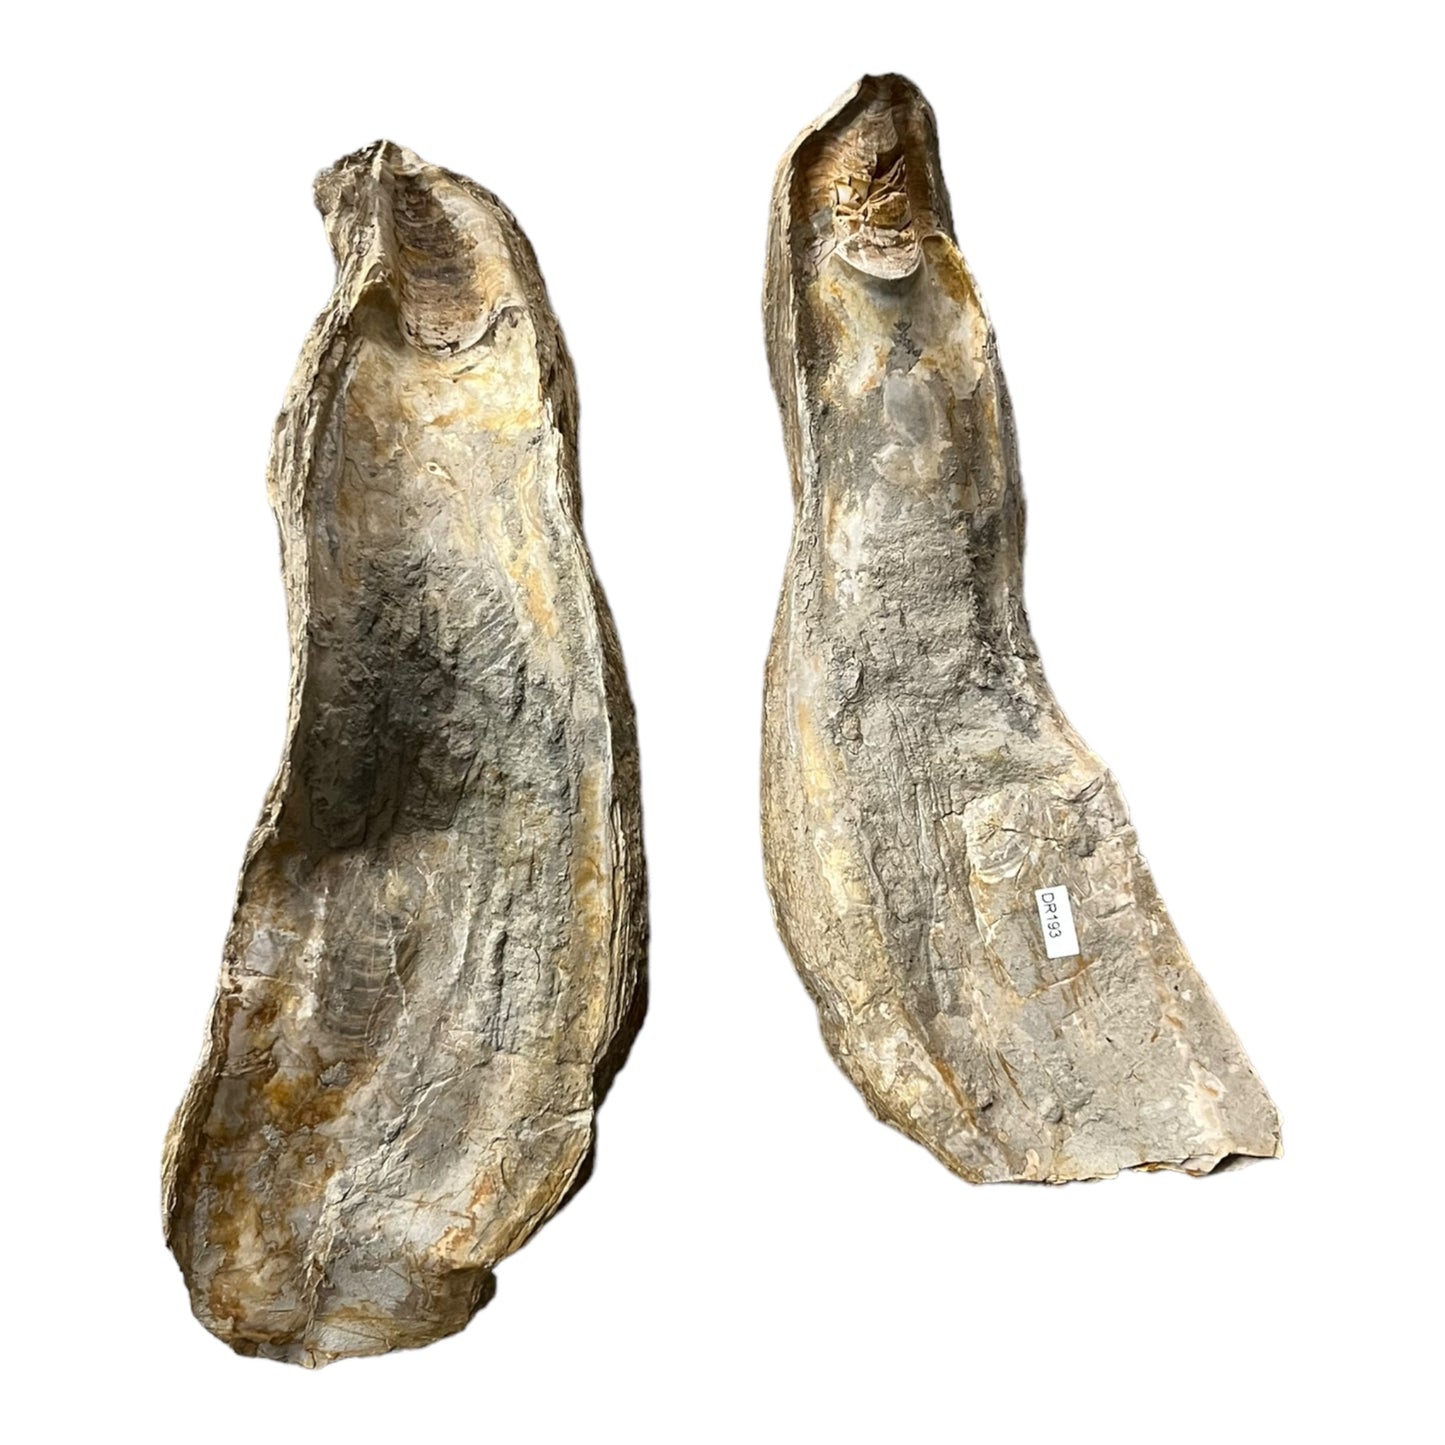 Ostrea crassissima grande Huitre fossile Hérault France DR193